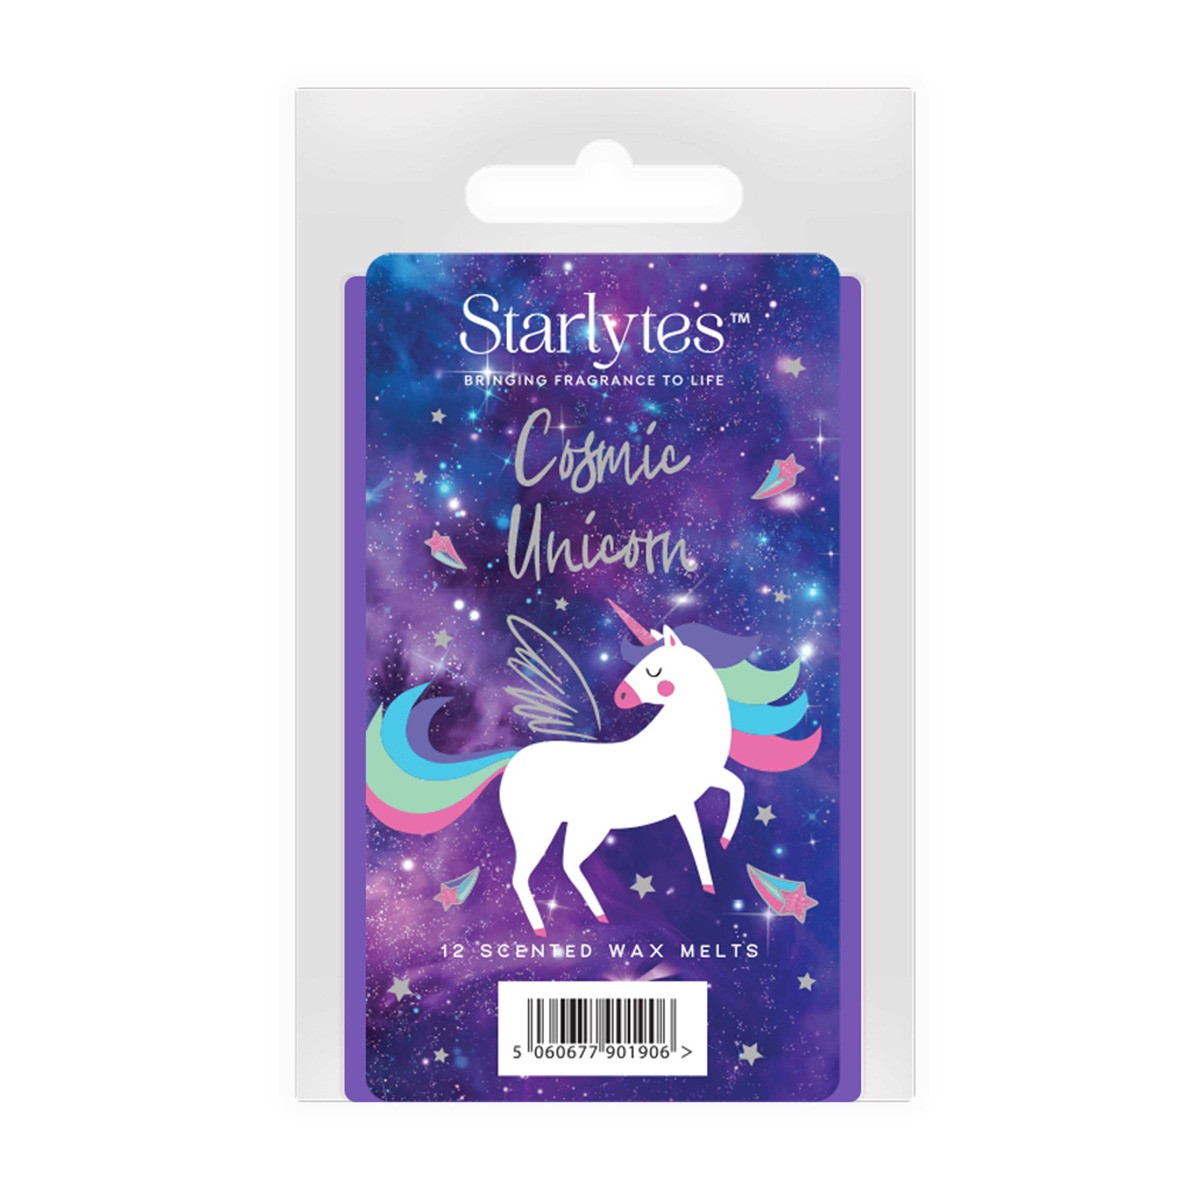 Starlytes Wax Melts 12 Pack - Cosmic Unicorn>